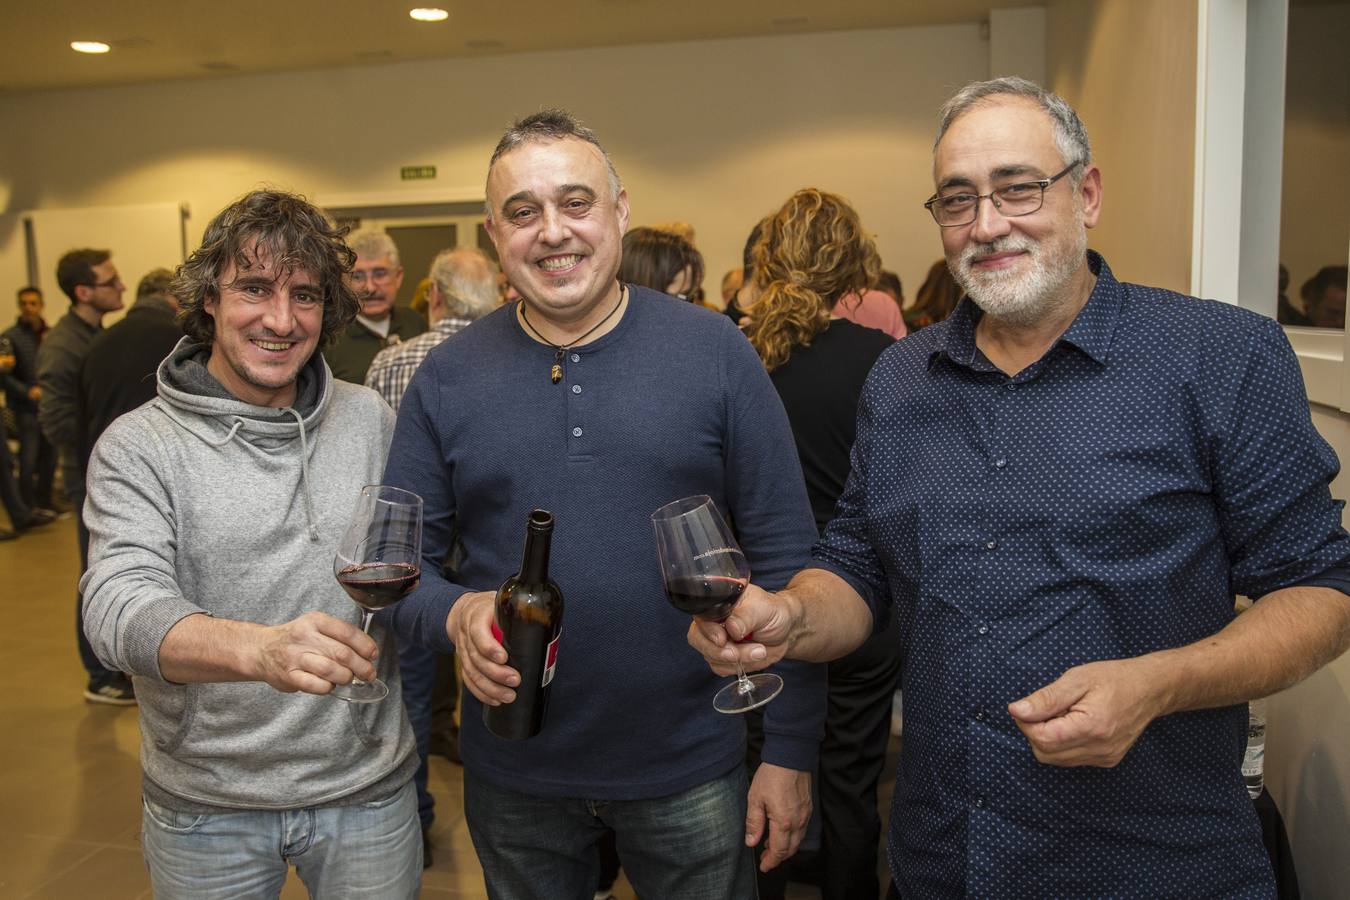 Los ganadores de la octava edición del Rally recibieron sus premios y disfrutaron de un vino de Rioja entre amigos..